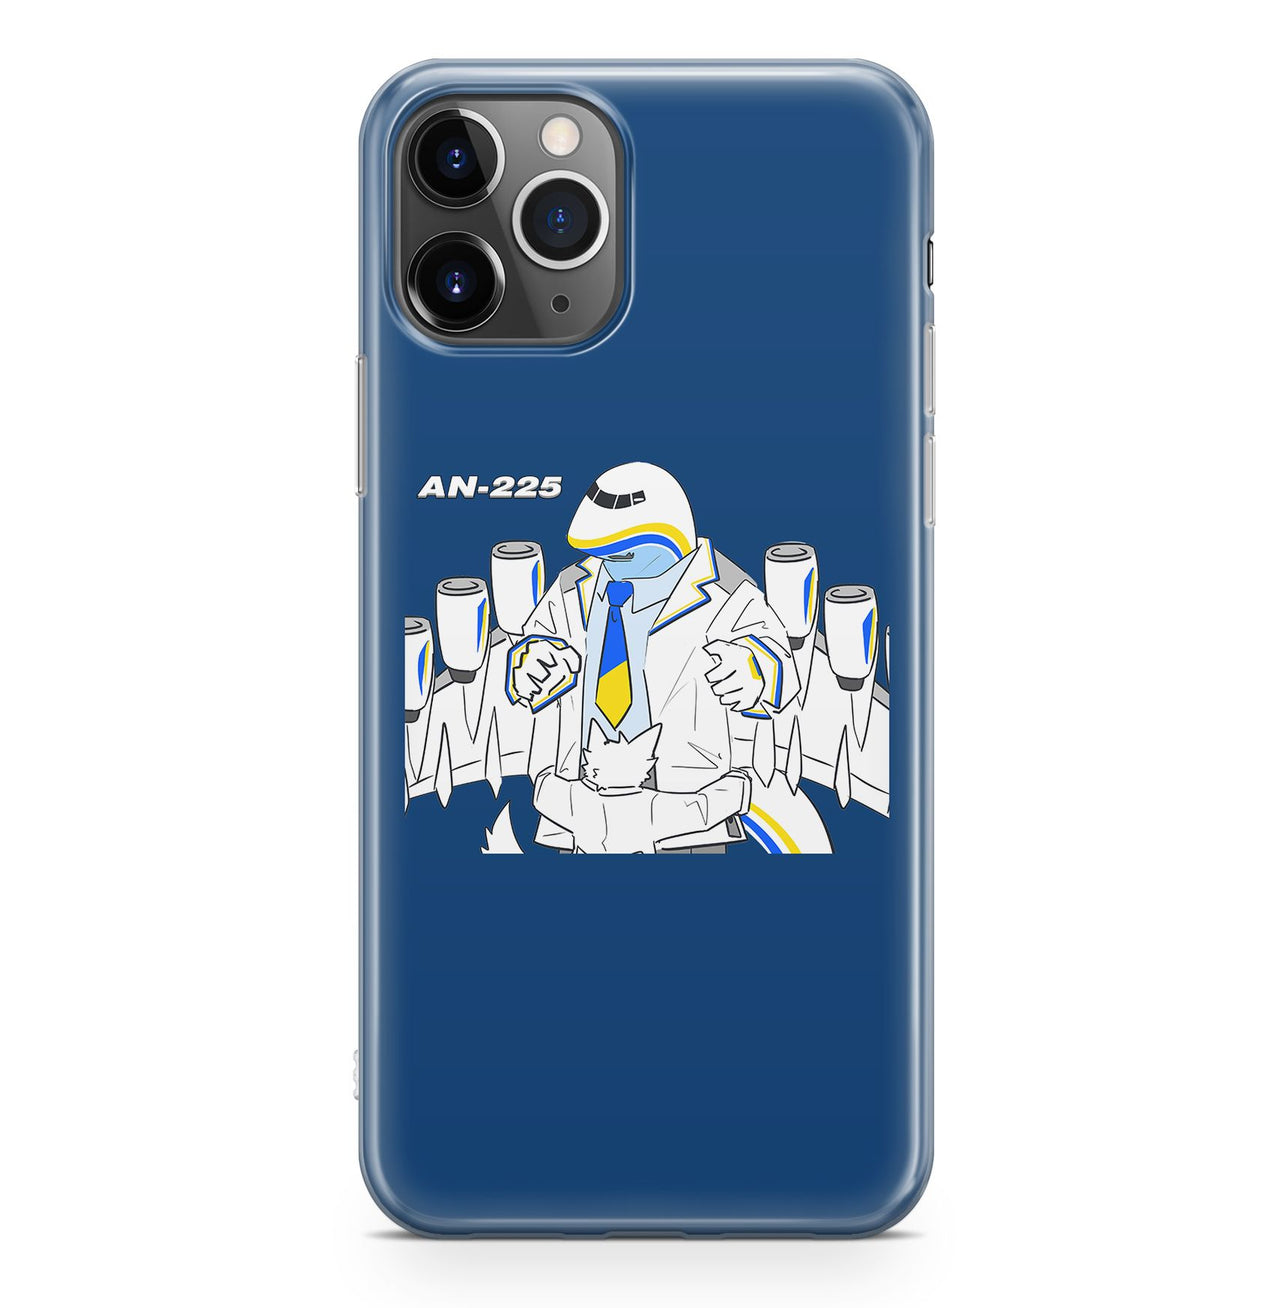 Antonov AN-225 (18) Designed iPhone Cases